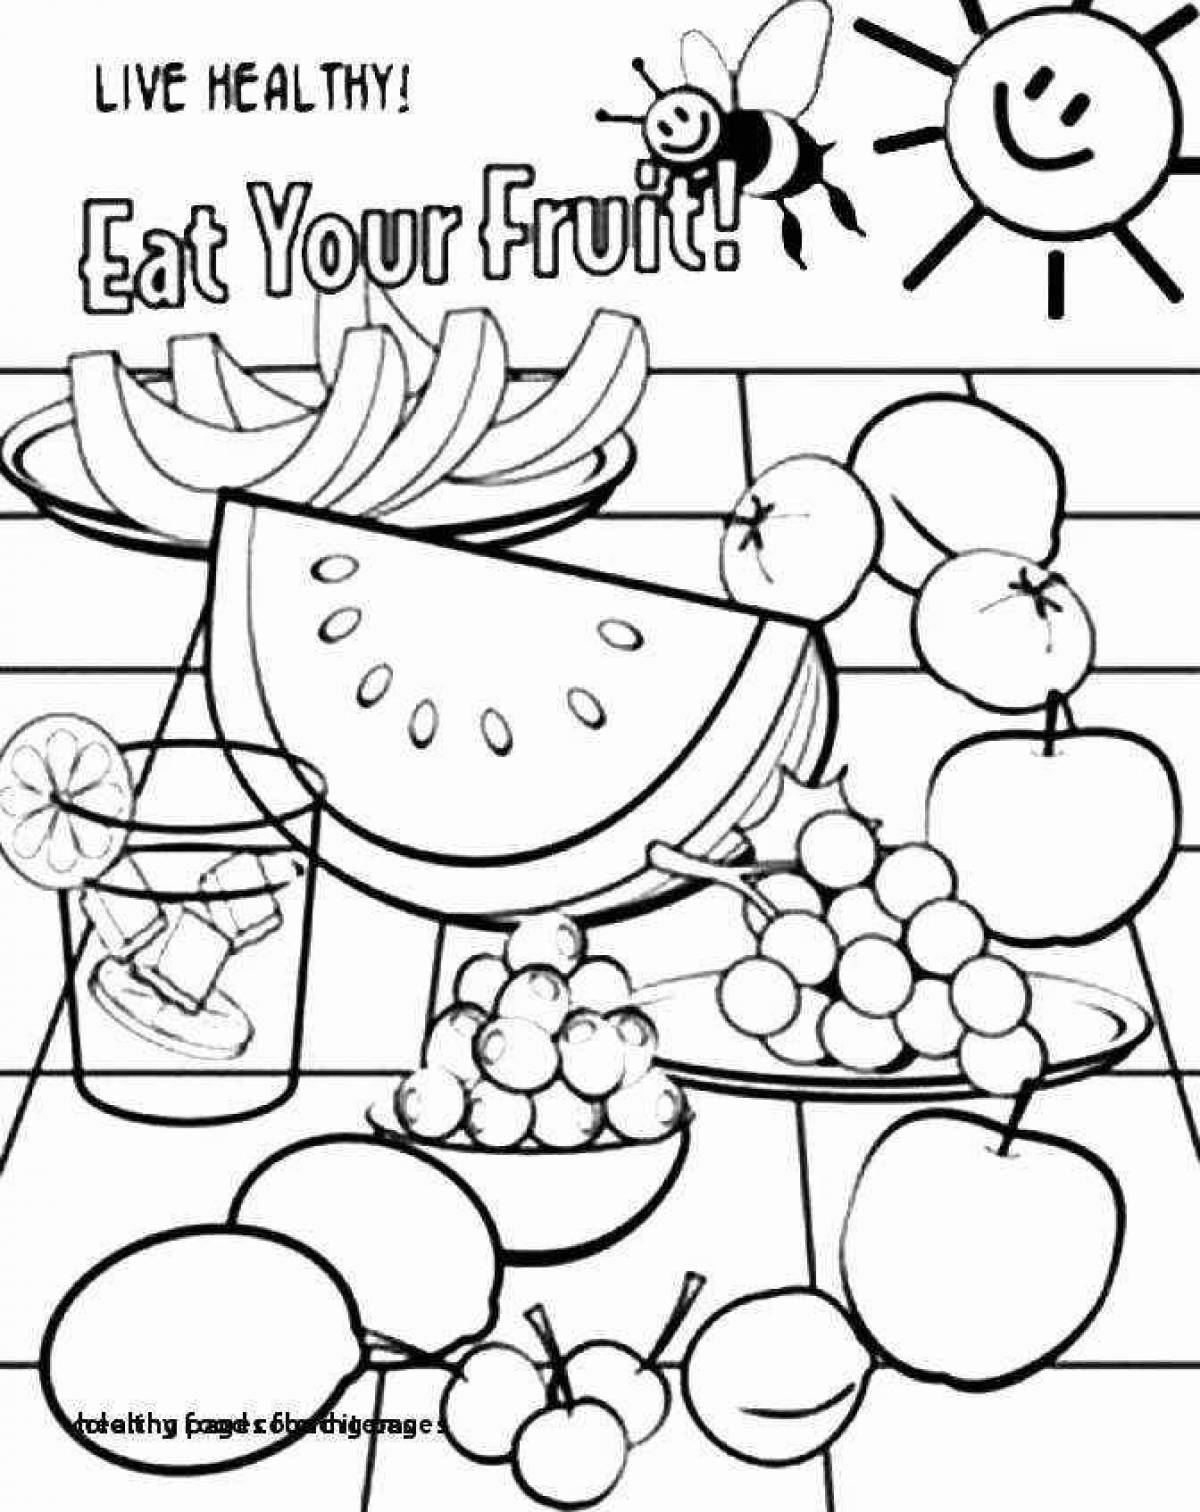 Healthy food coloring book